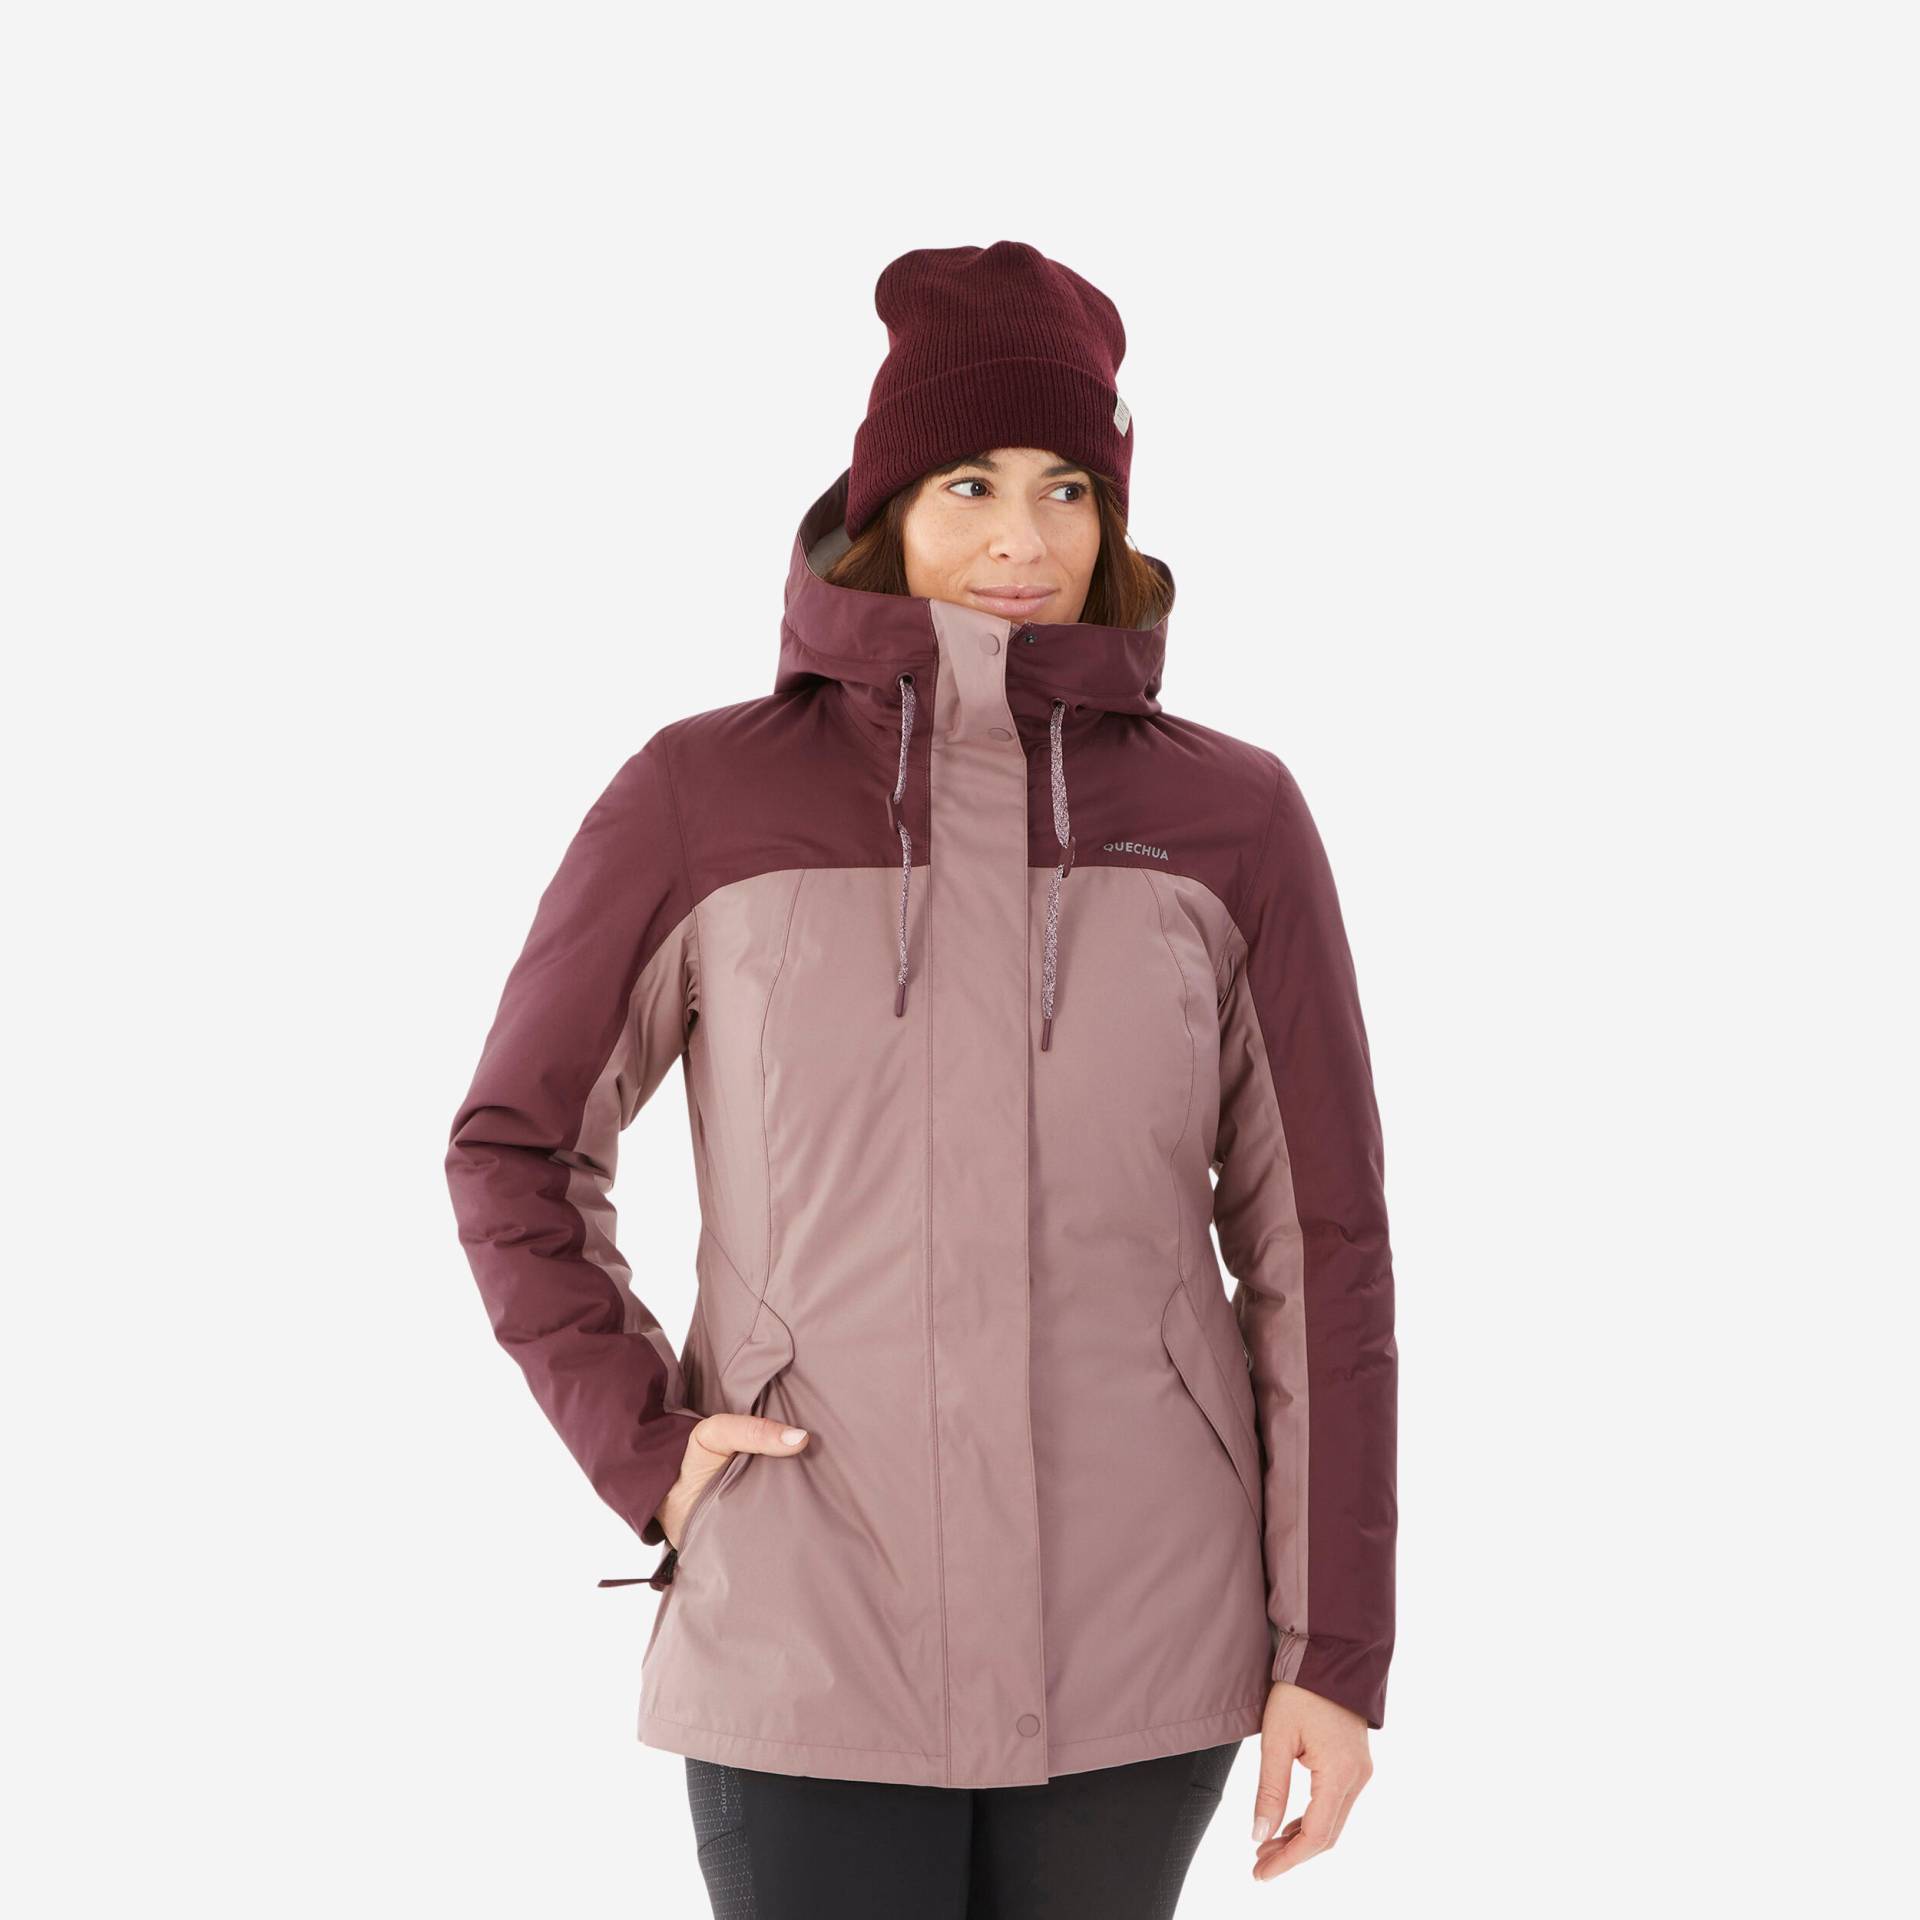 Winterjacke Damen bis -10 °C wasserdicht Winterwandern - SH500 rosa/bordeux von QUECHUA